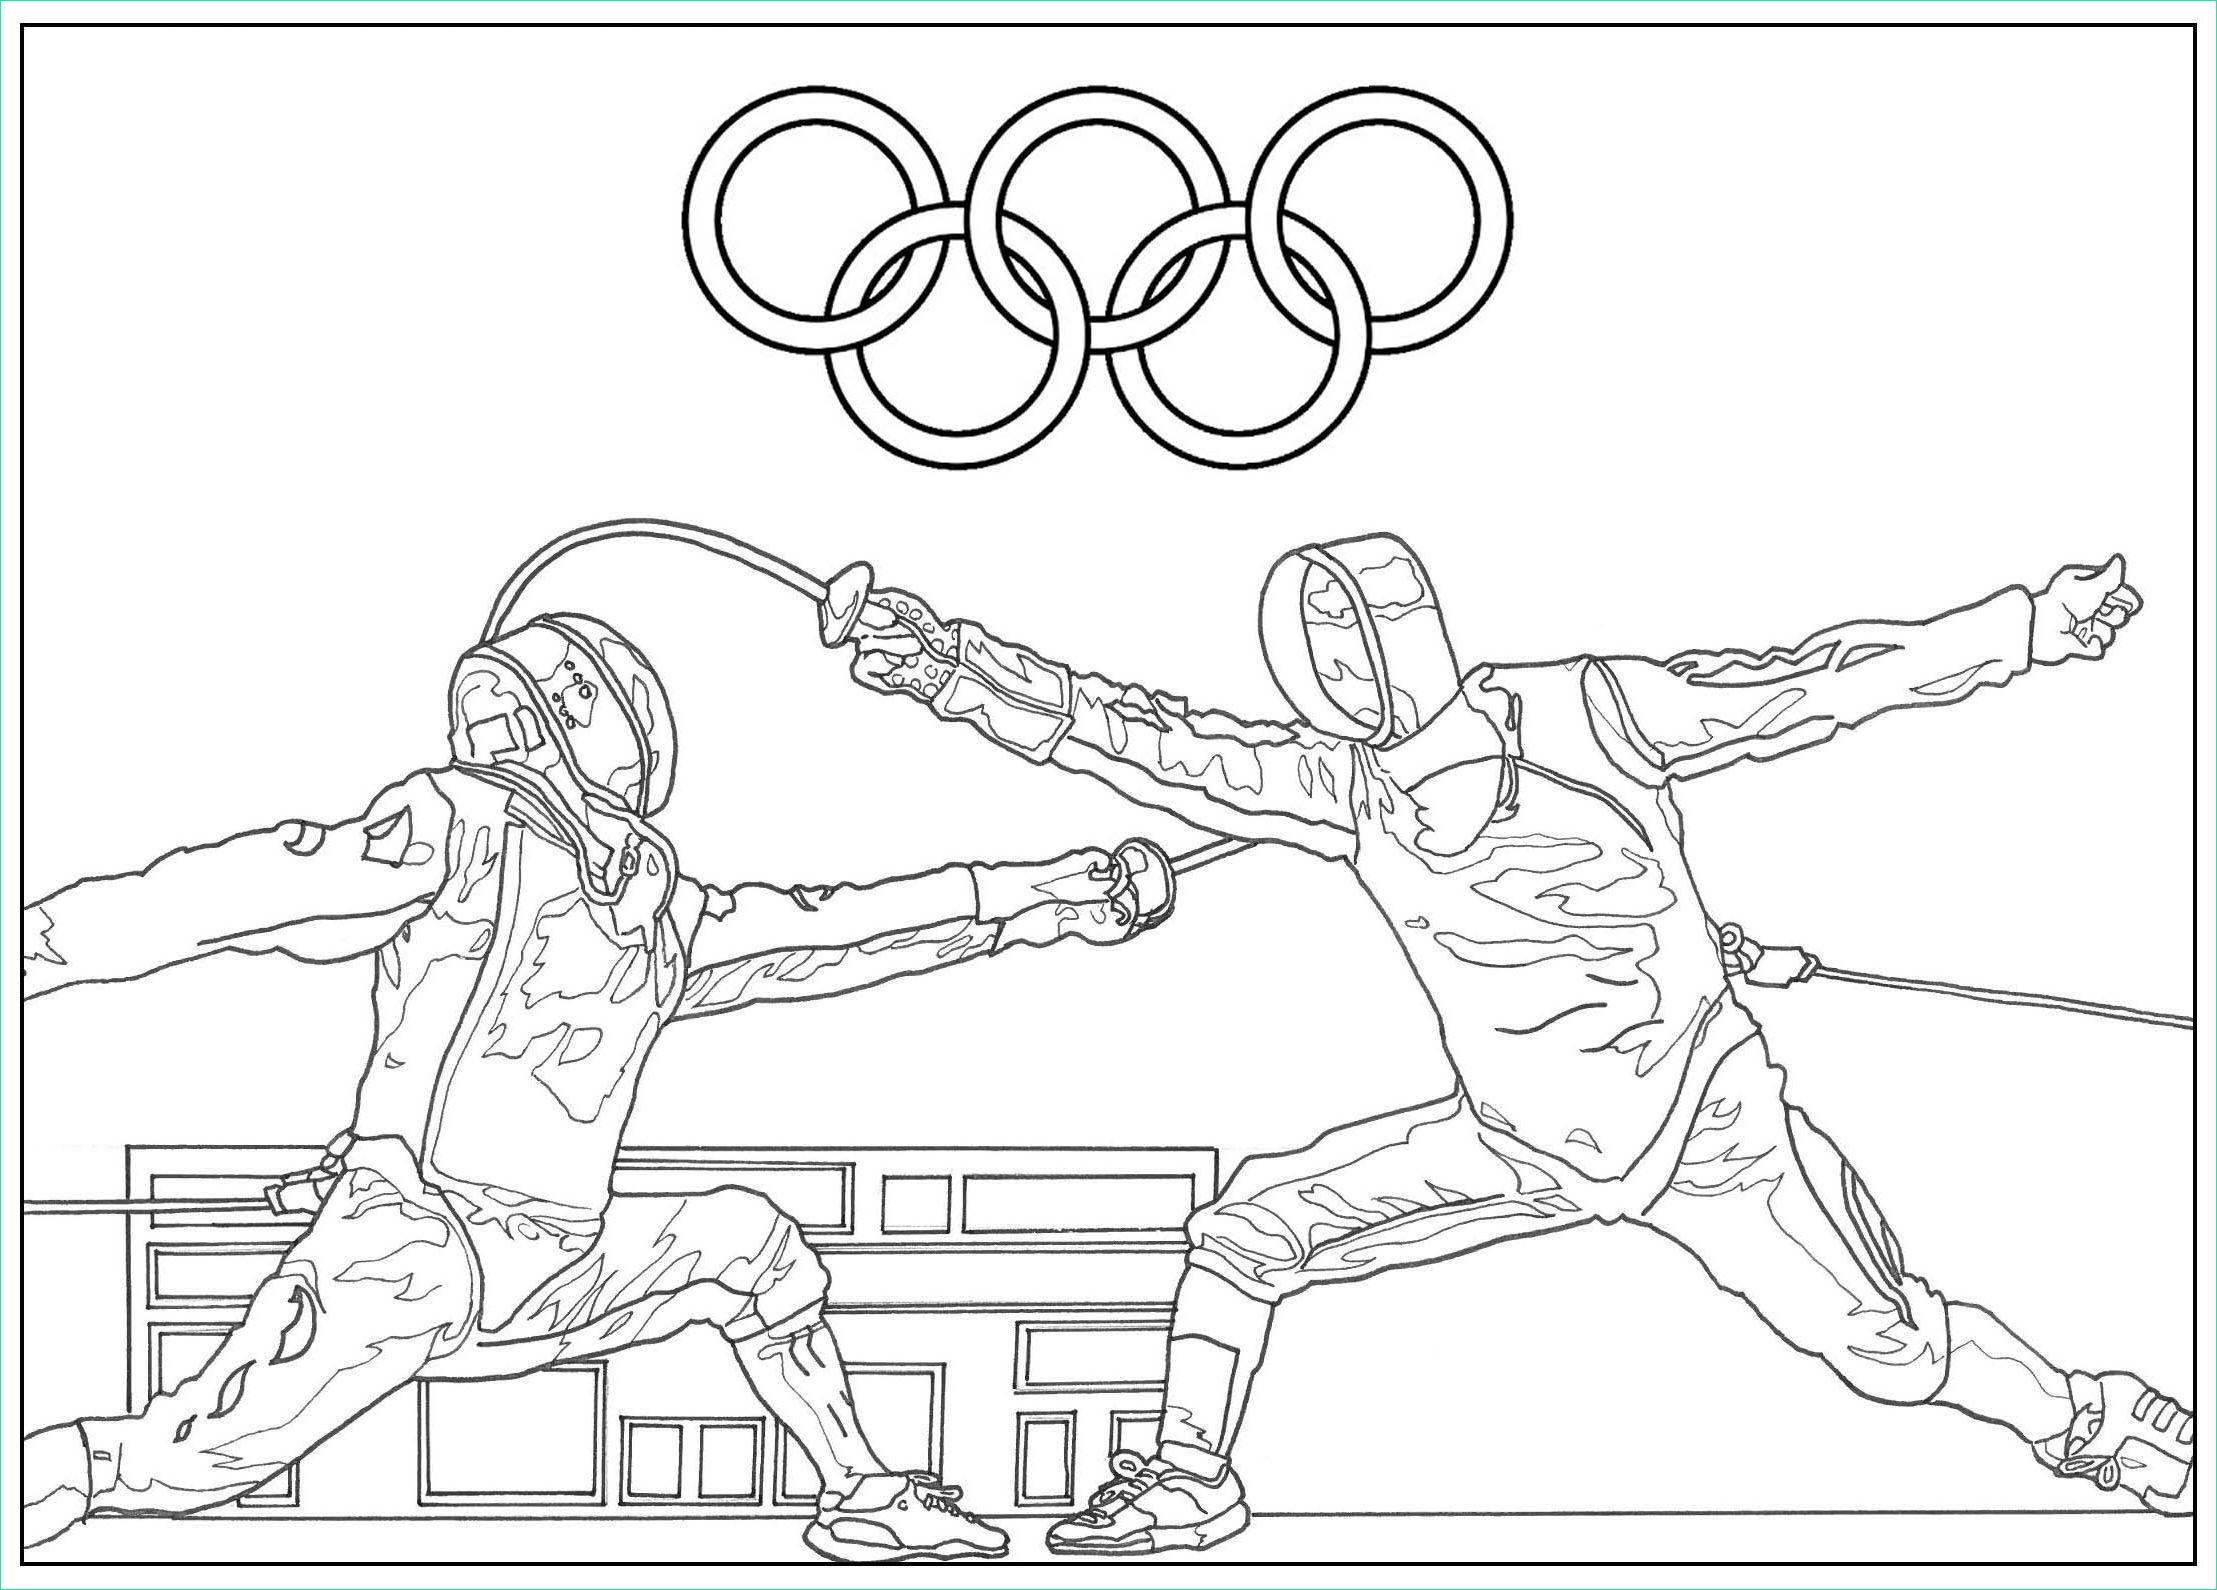 image=jeux olympiques coloriage jeux olympiques escrime 1